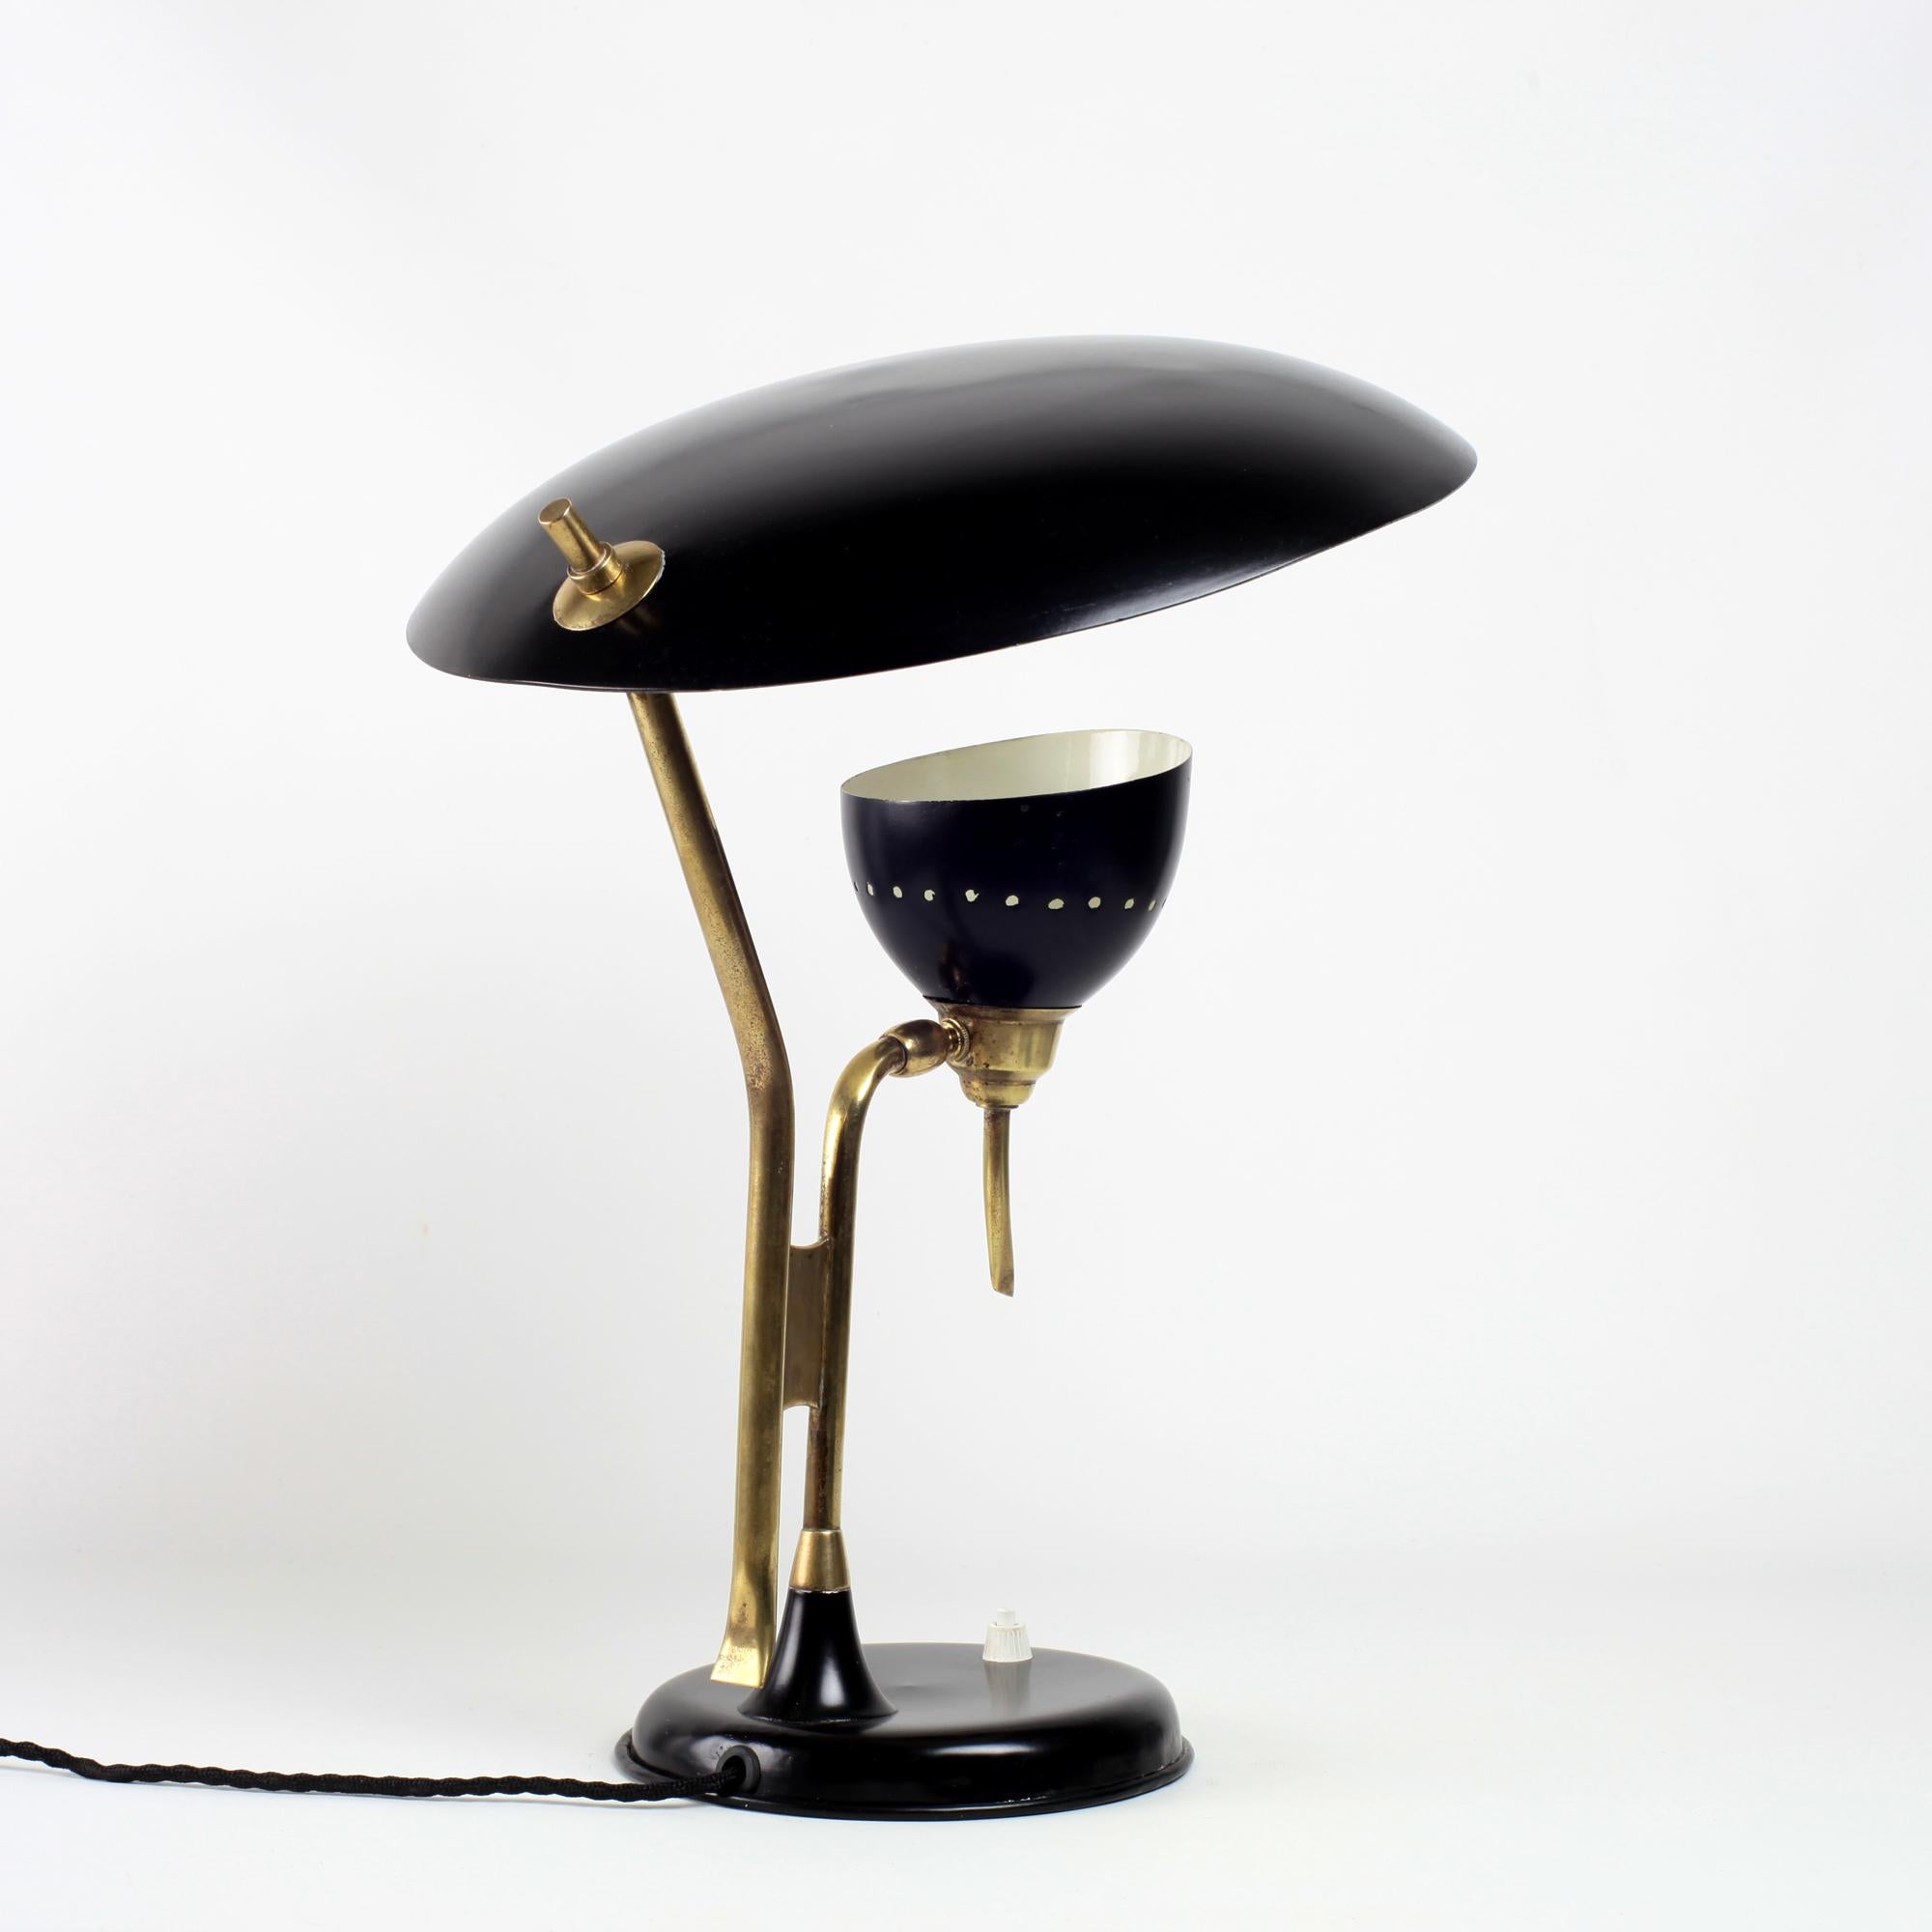 Mid-20th Century Oscar Torlasco Table Lamp by Lumi Italy 1950's